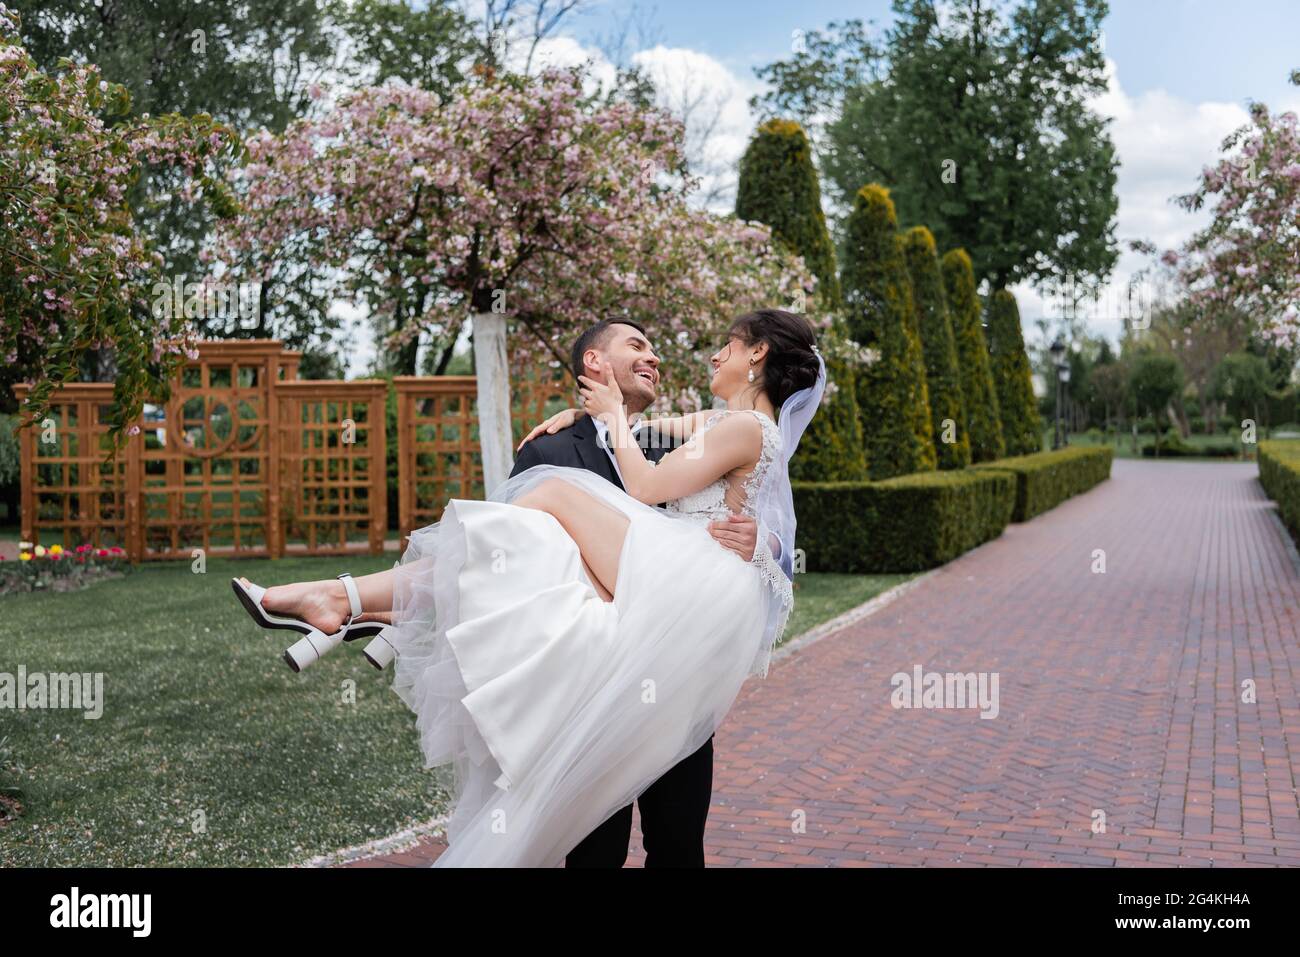 Fröhlicher Bräutigam hält die Braut im Hochzeitskleid im Park an den Händen Stockfoto